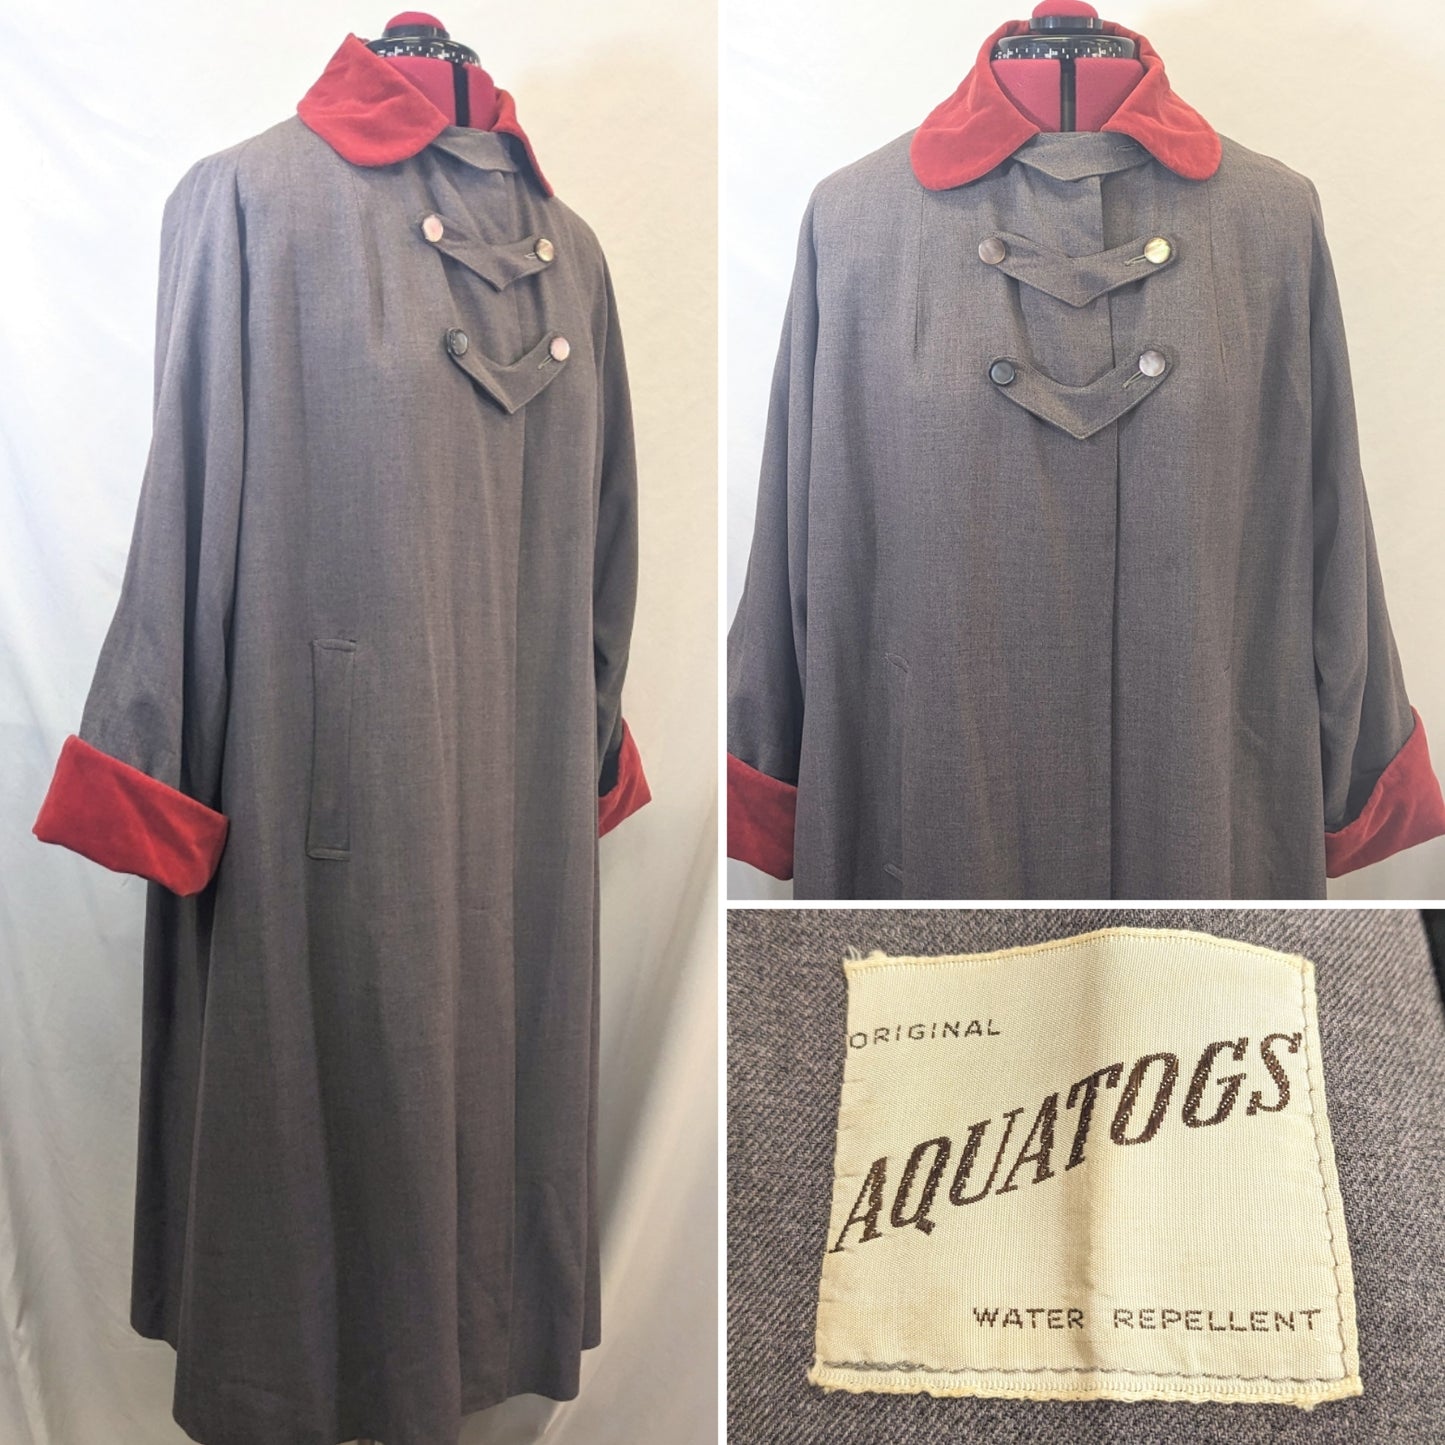 Late 1940s Aquatogs Coat